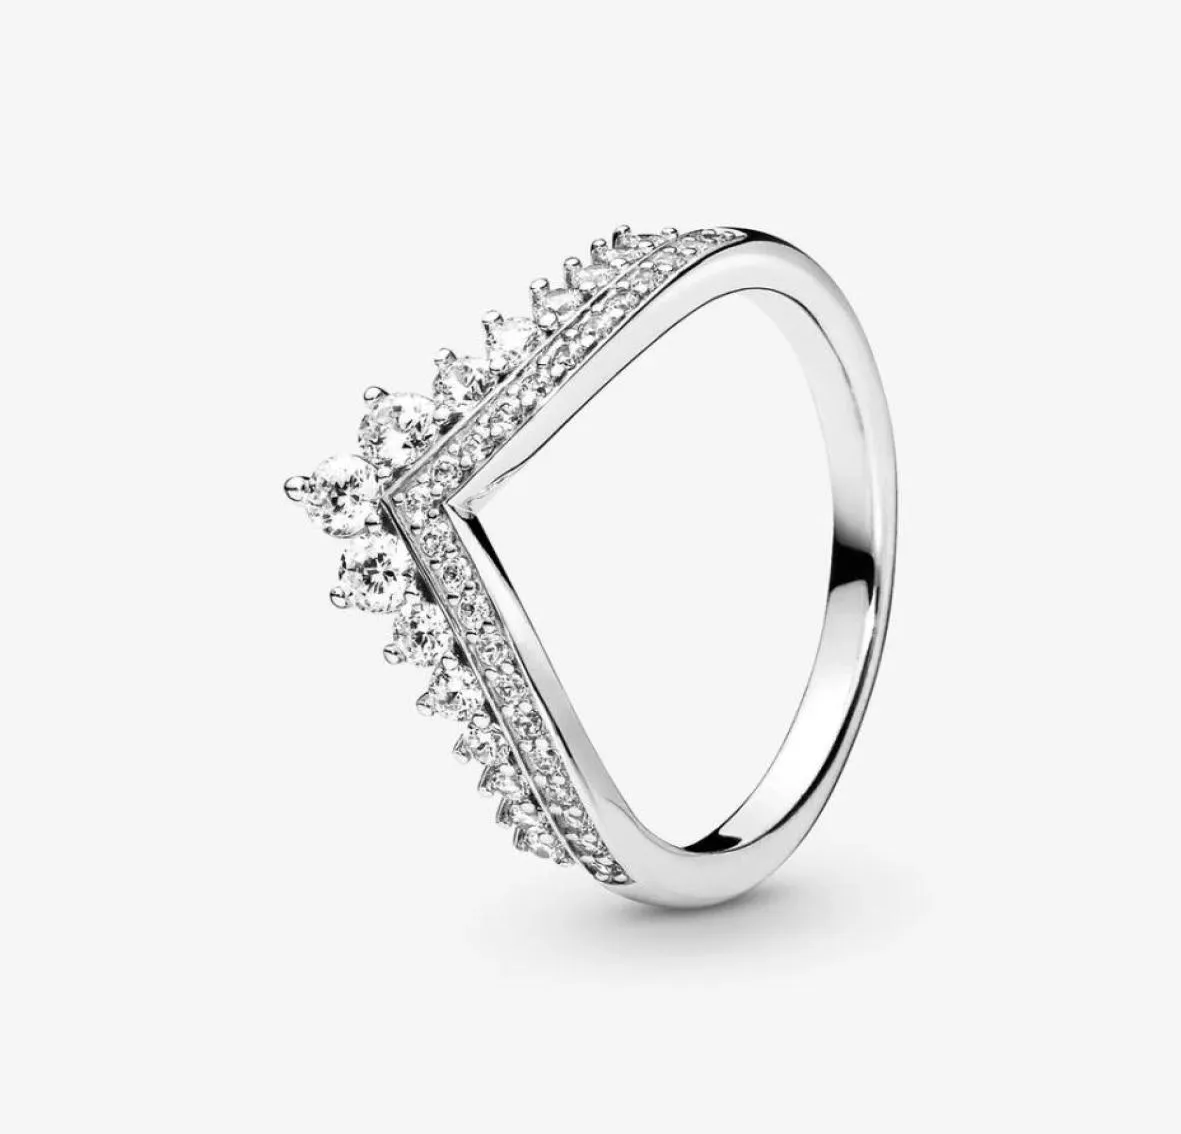 NOWOŚĆ 2021 S925 STRINLING SREBRNY Pierścień Wisla Wisla Tiara Crown Lśkanie dla kobiet biżuteria zaręczynowa rocznica 8704211